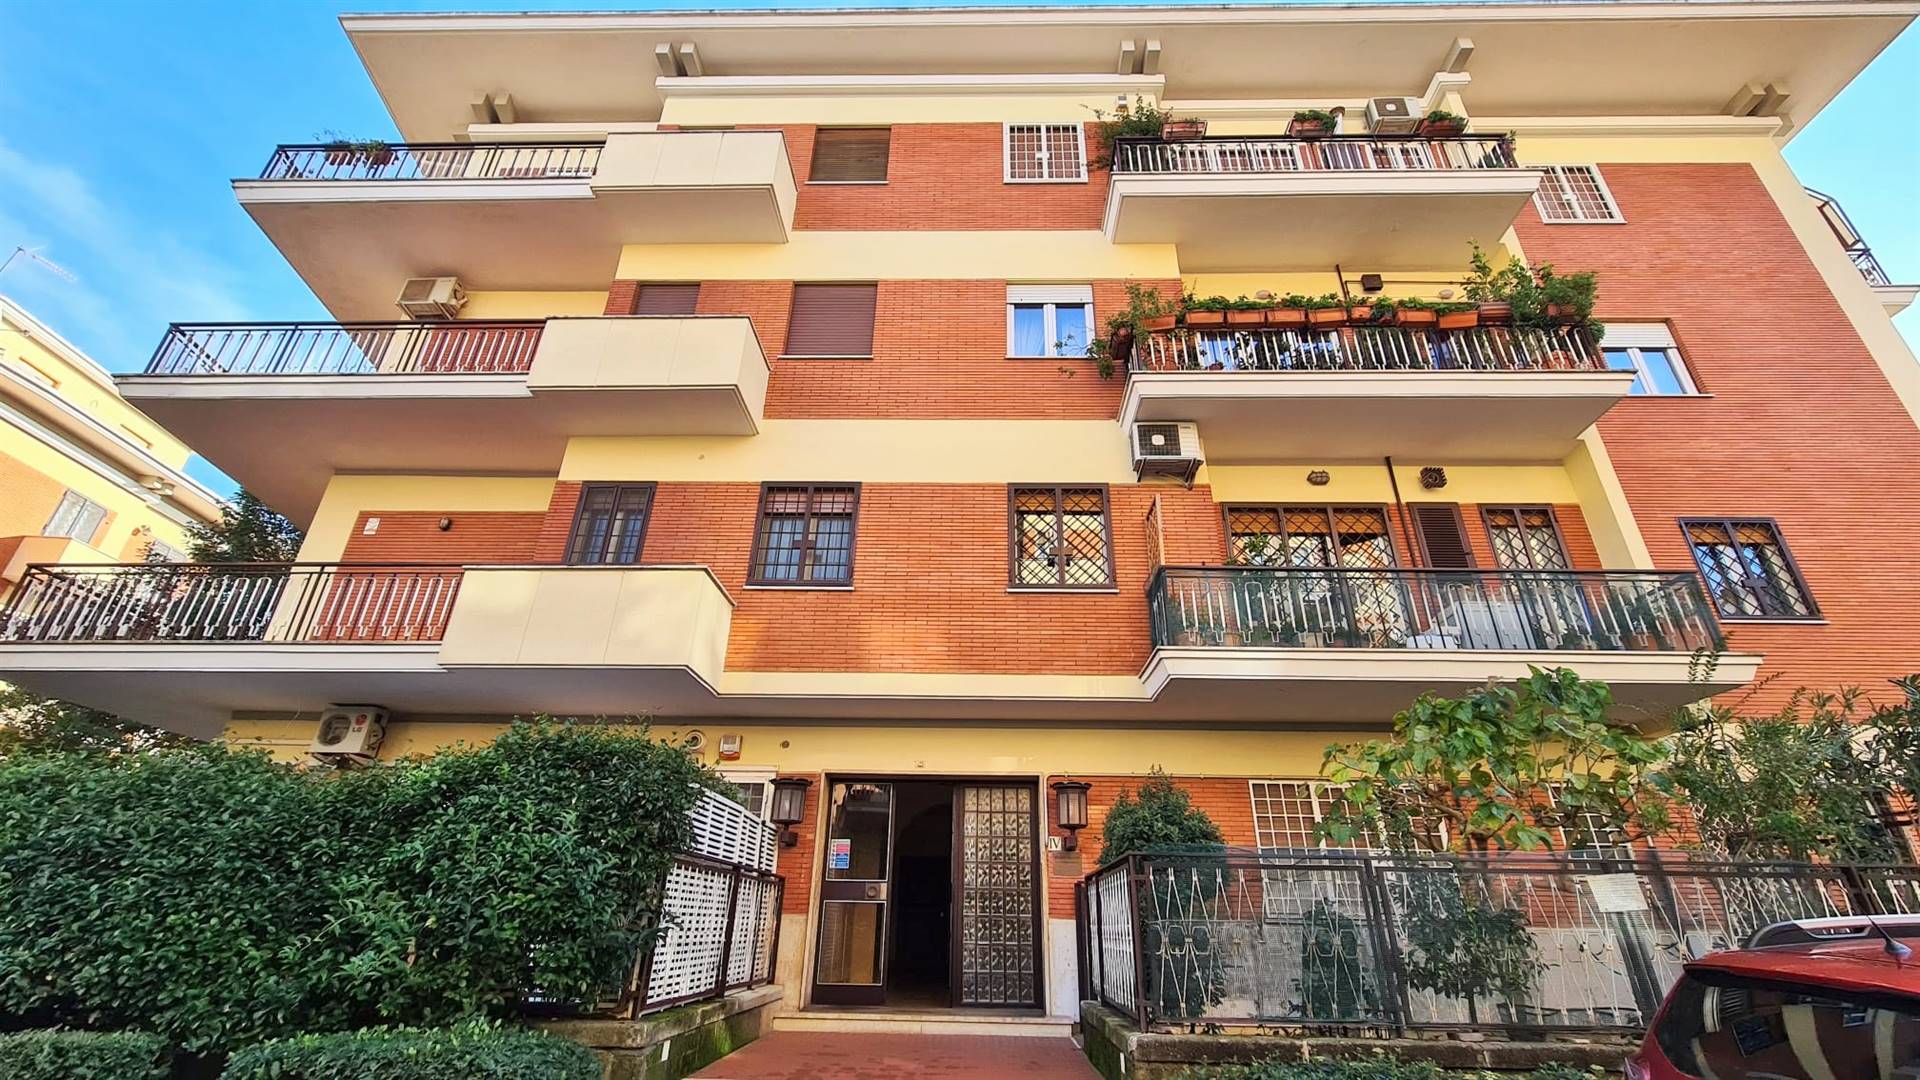 Appartamento in vendita a Roma, 4 locali, zona Zona: 42 . Cassia - Olgiata, prezzo € 330.000 | CambioCasa.it